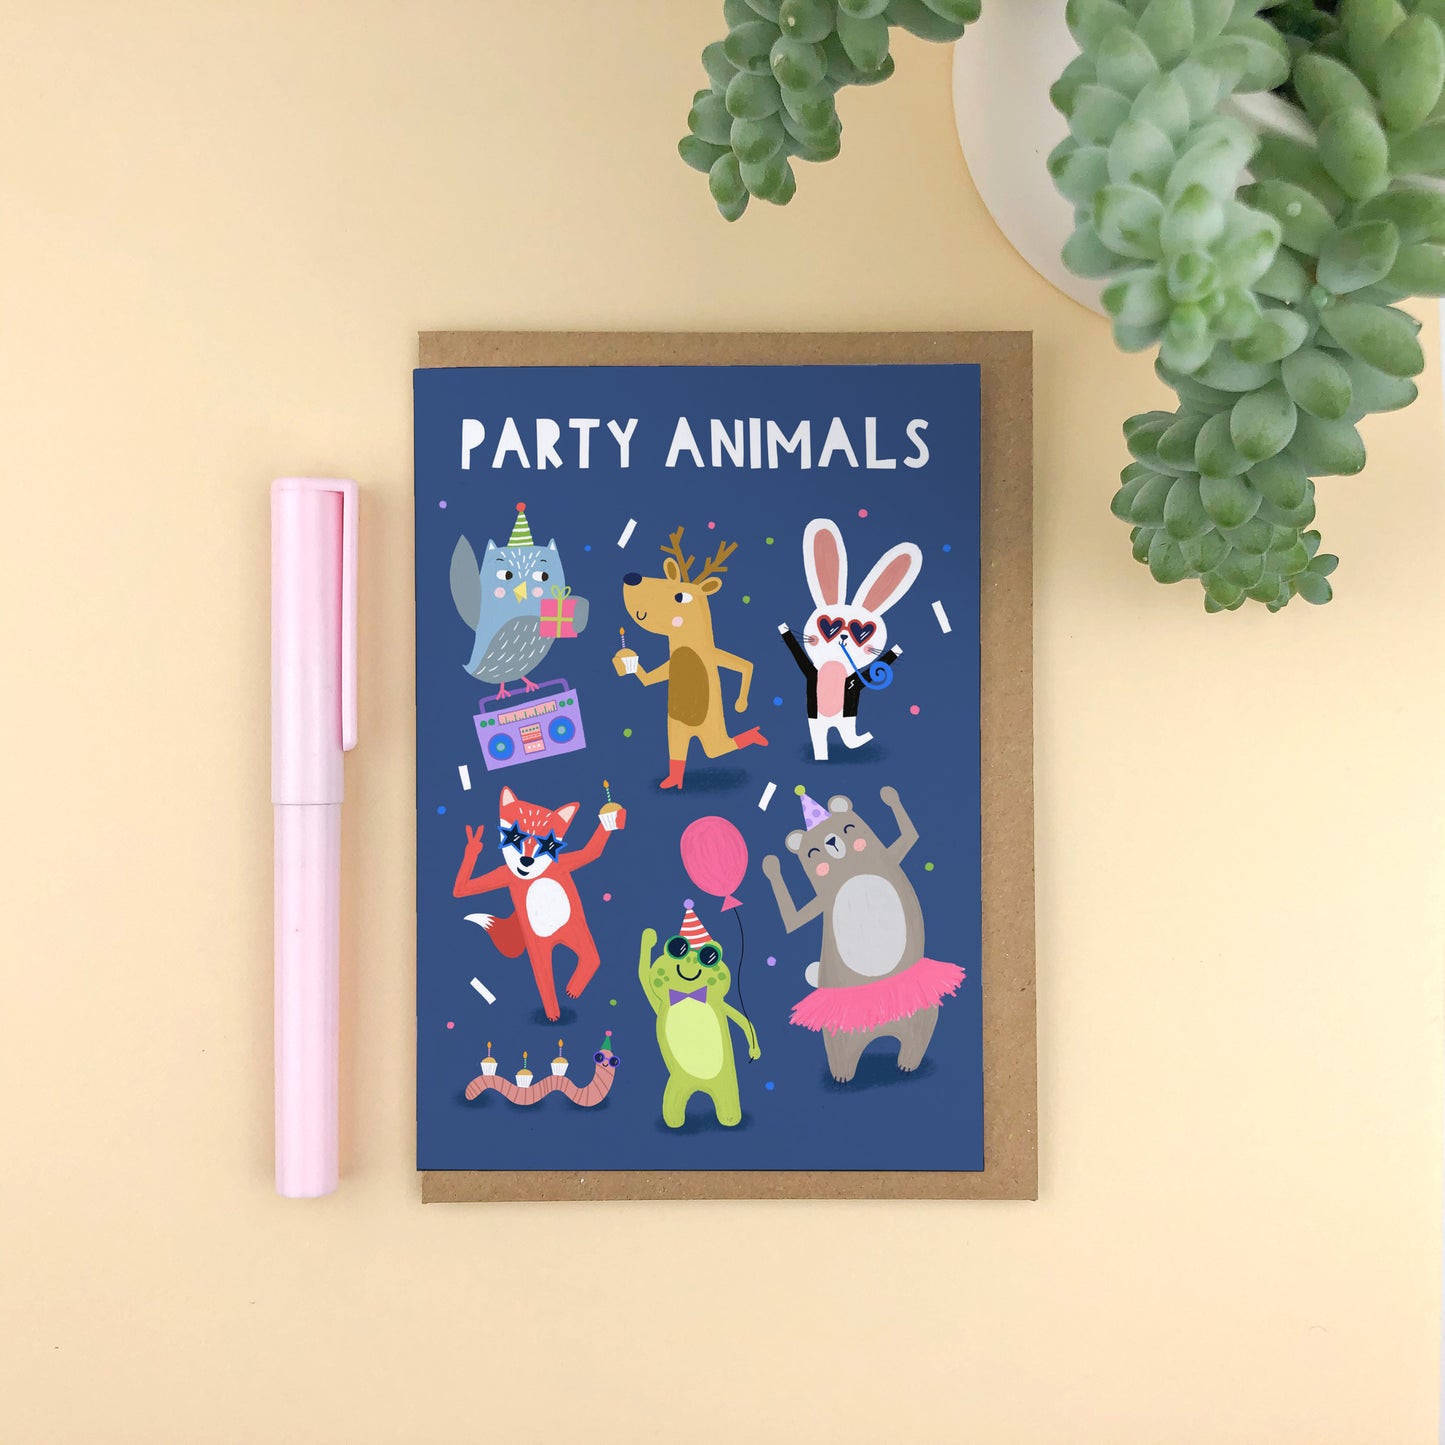 Party Animals! Children's Birthday Card